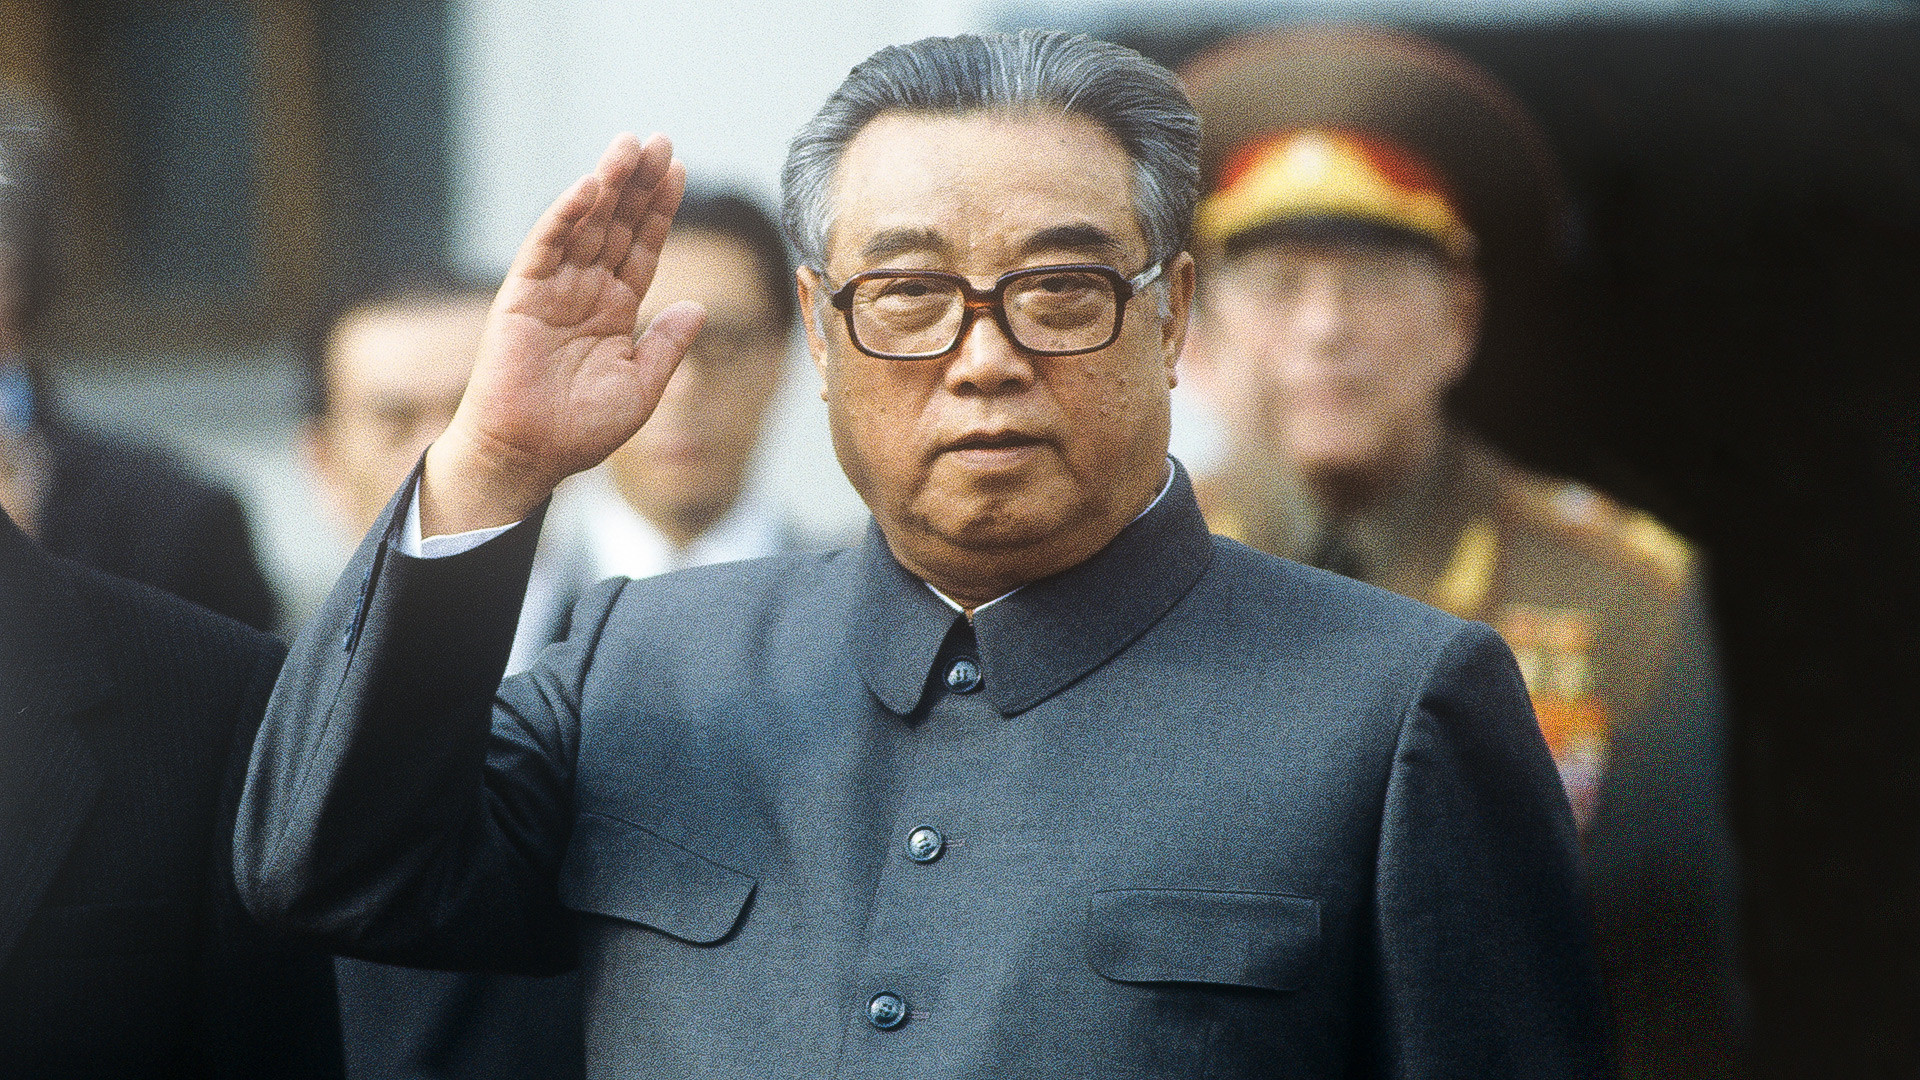 朝鮮民主主義人民共和国初代最高指導者、金日成。北朝鮮の代表団によるソ連ヘの公式友好訪問。